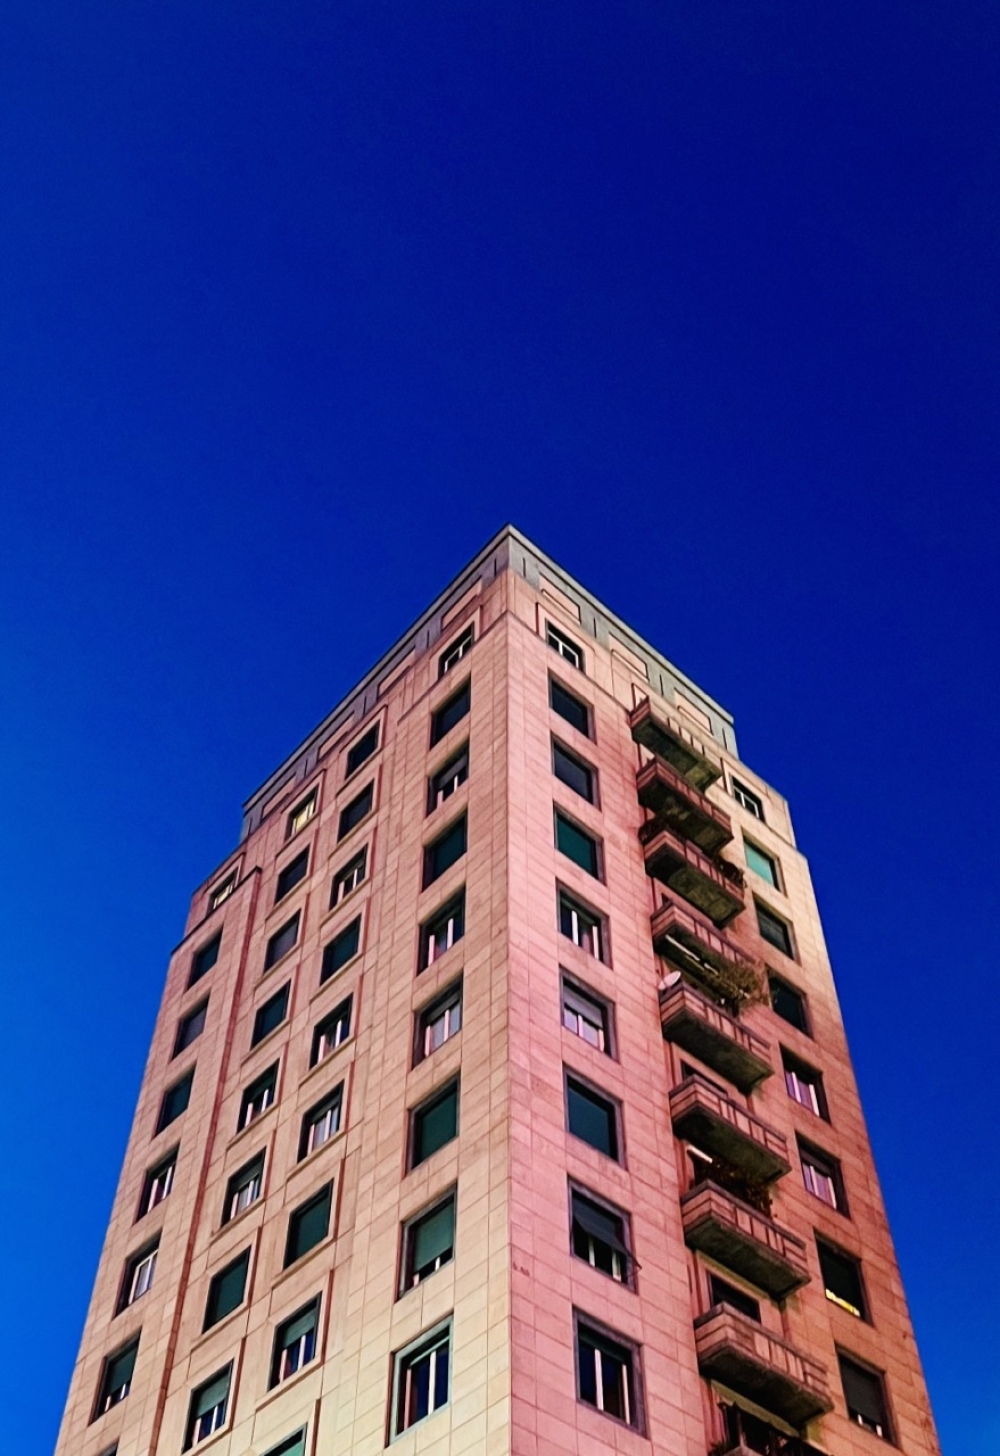 Grattacielo Rosa